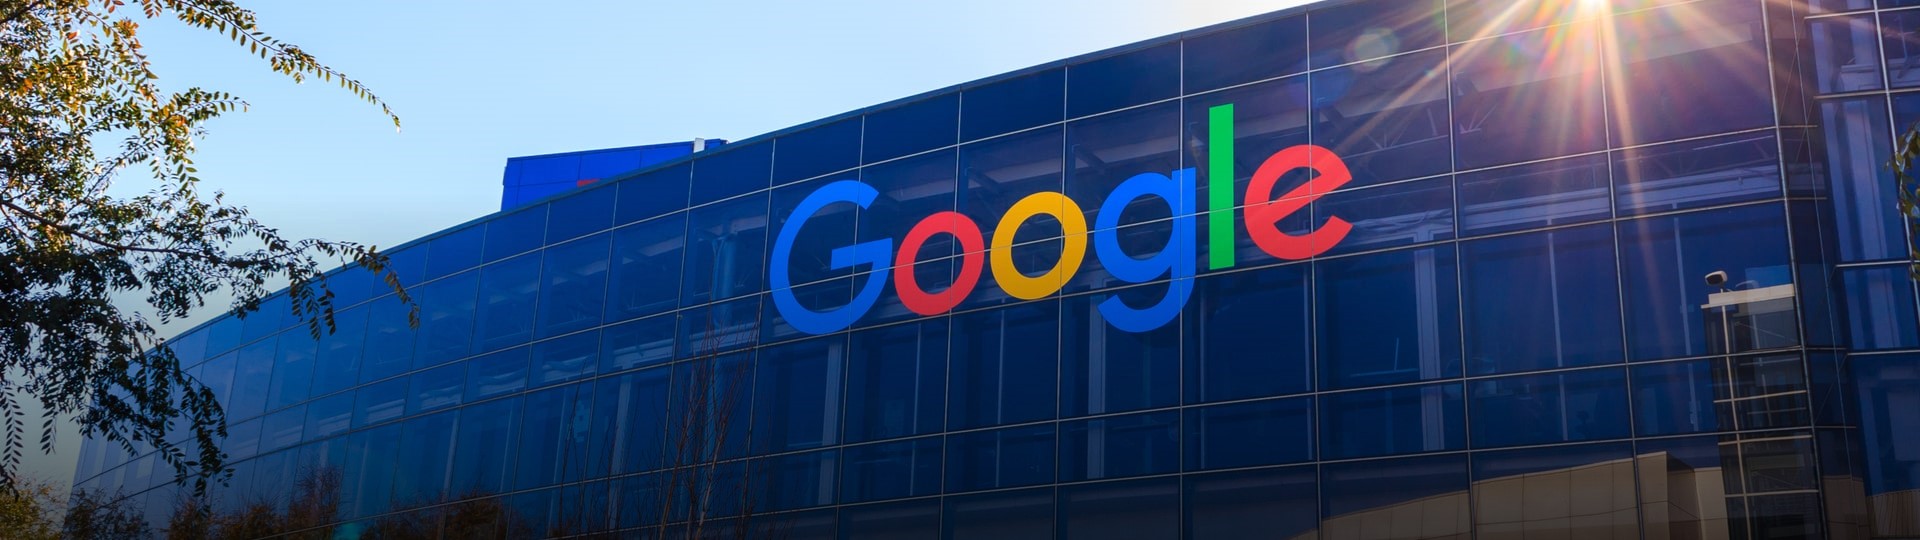 Google uzavřel už přes 600 licenčních smluv s dodavateli zpravodajství